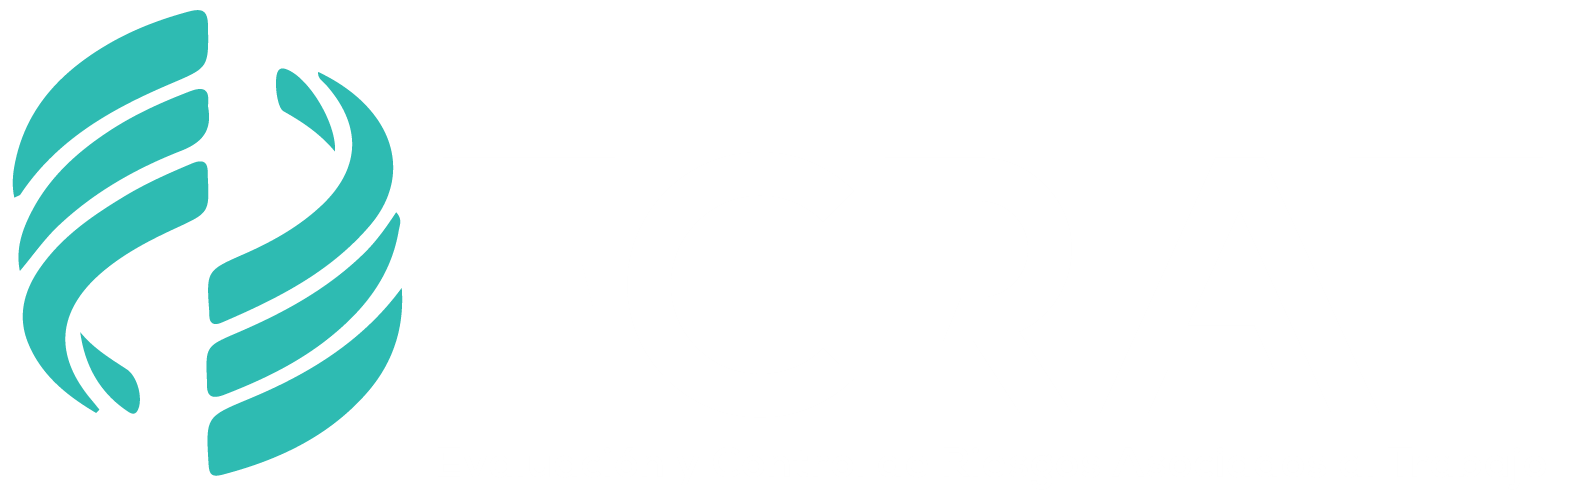 Logo ECRAT